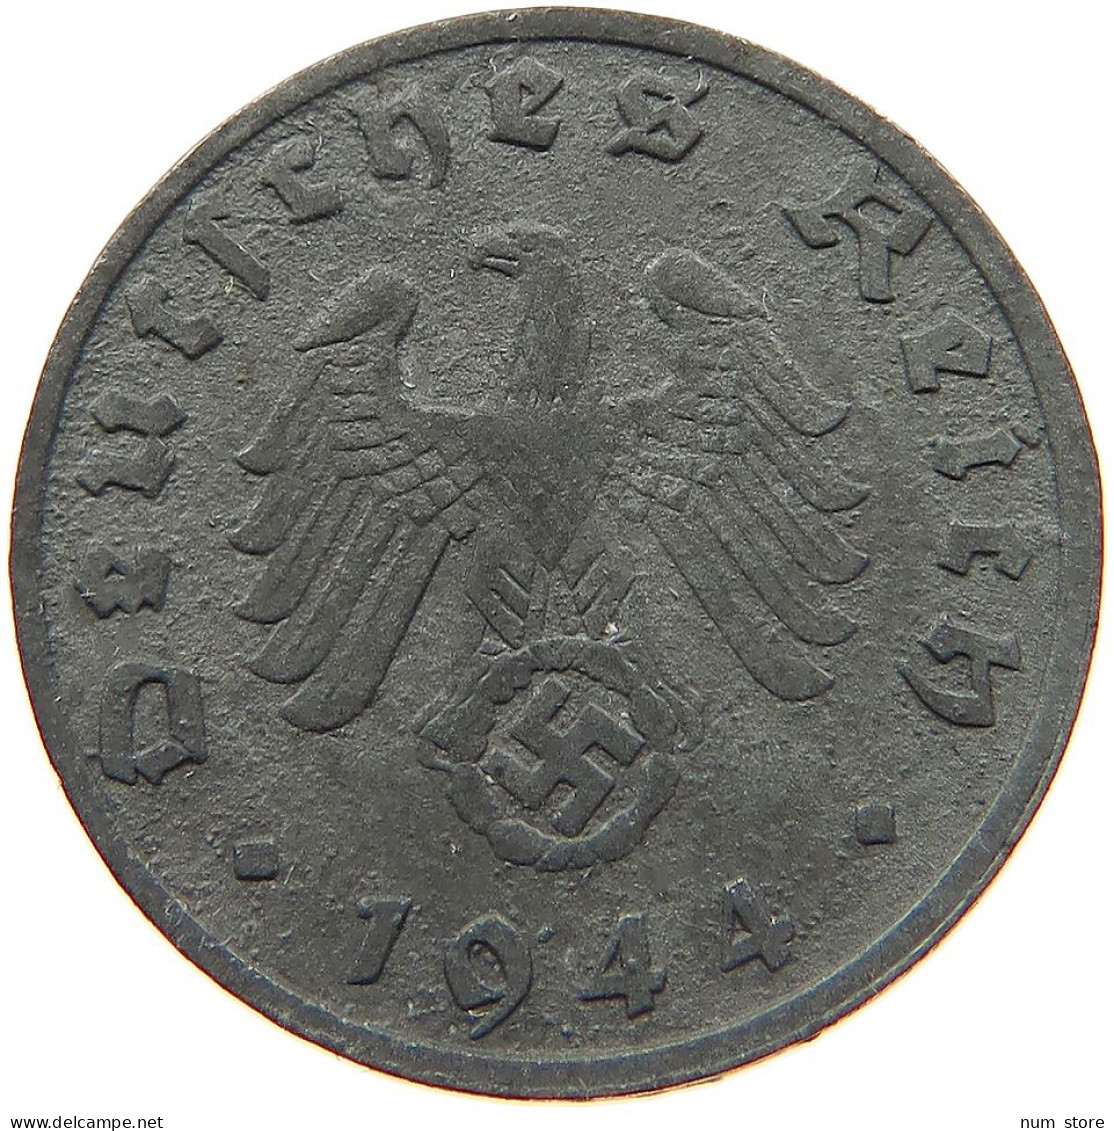 GERMANY 1 REICHSPFENNIG 1944 B #s091 1009 - 1 Reichspfennig